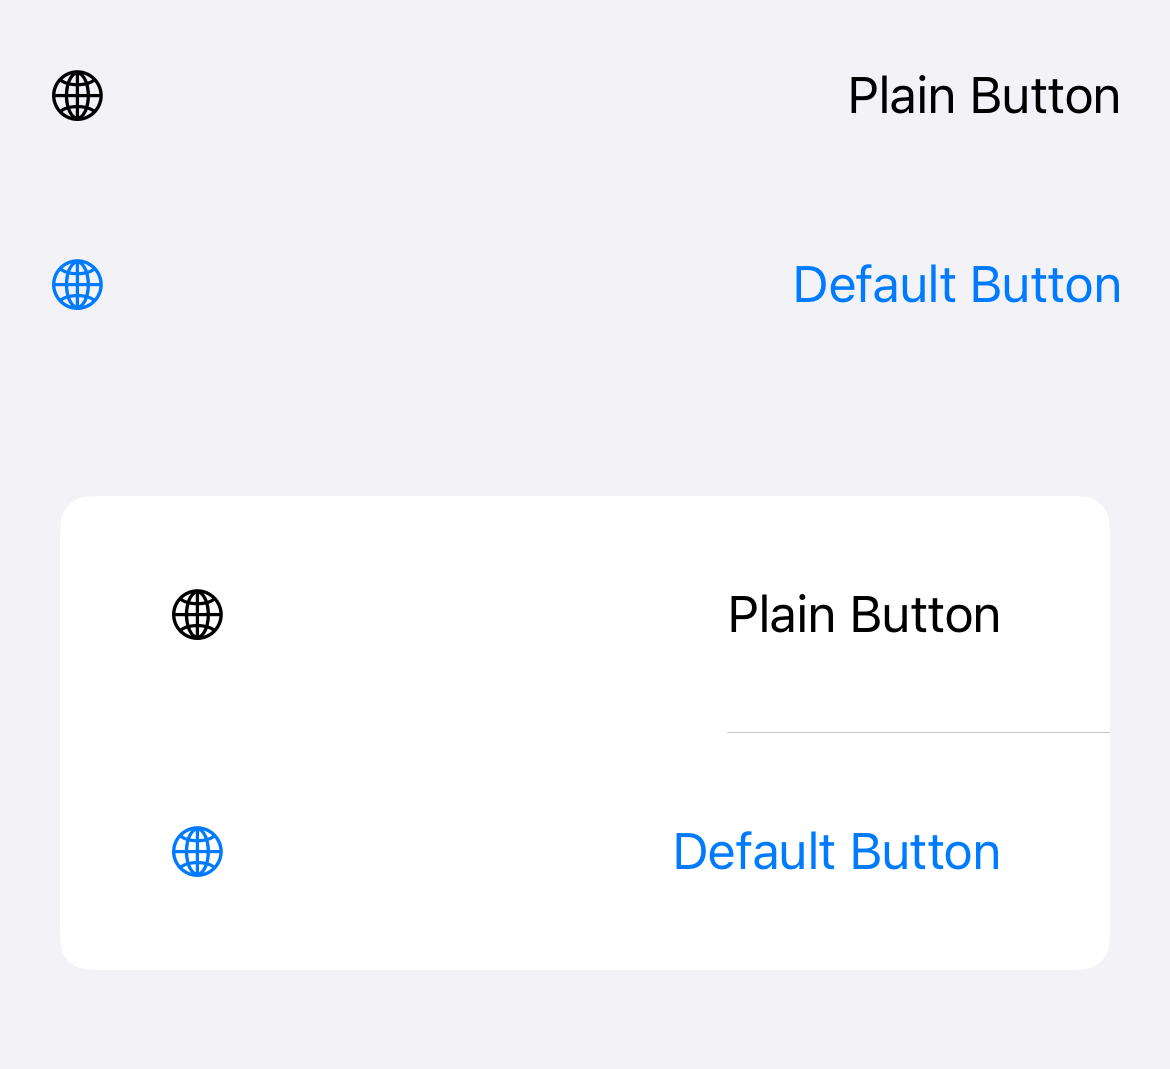 Plain button style vs. Default button style.